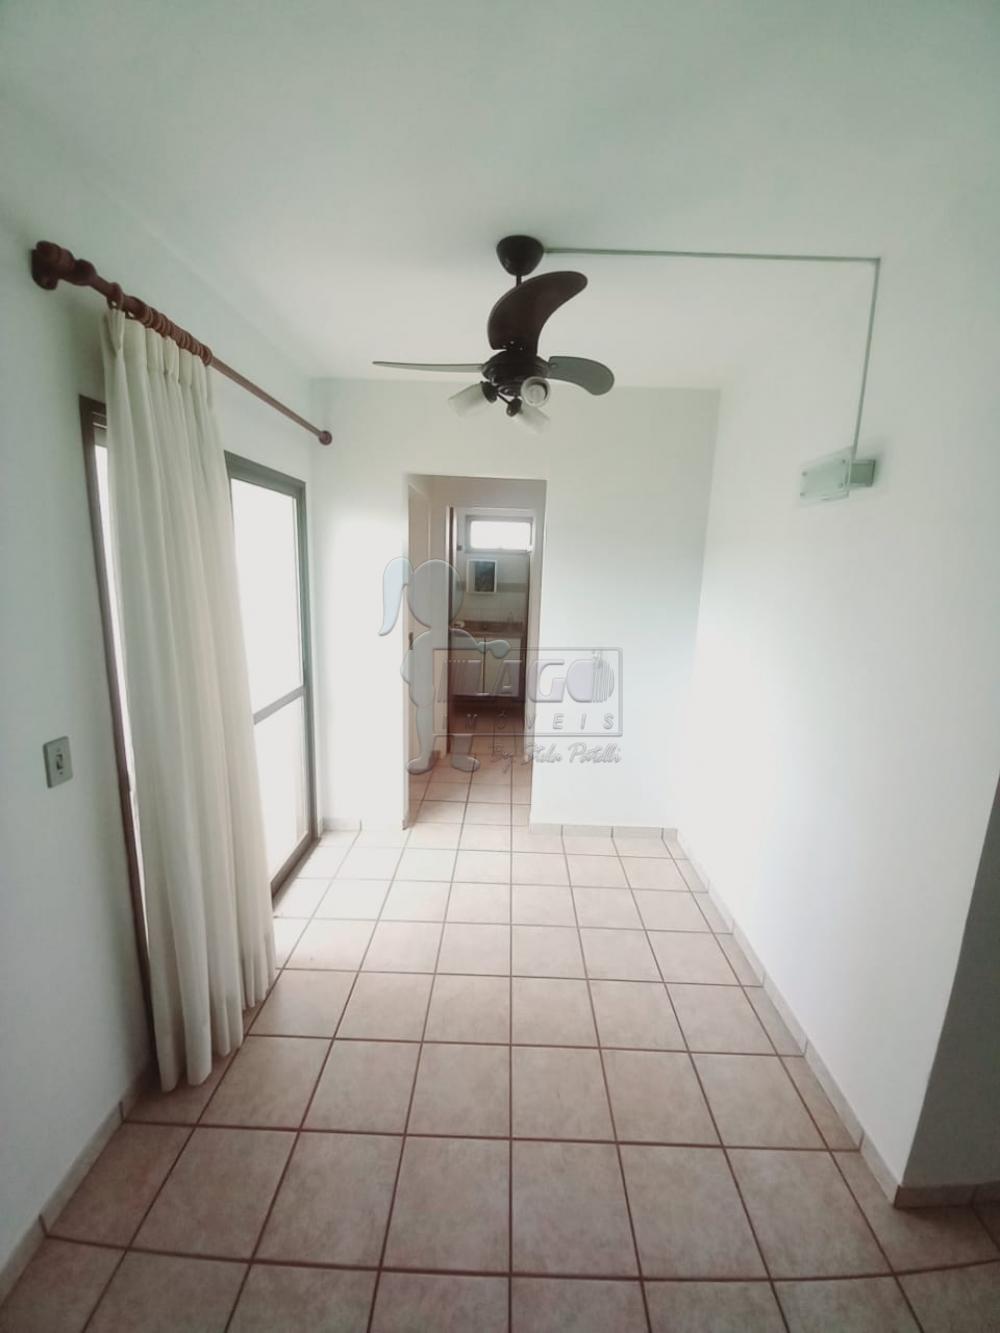 Alugar Apartamentos / Studio / Kitnet em Ribeirão Preto R$ 850,00 - Foto 4